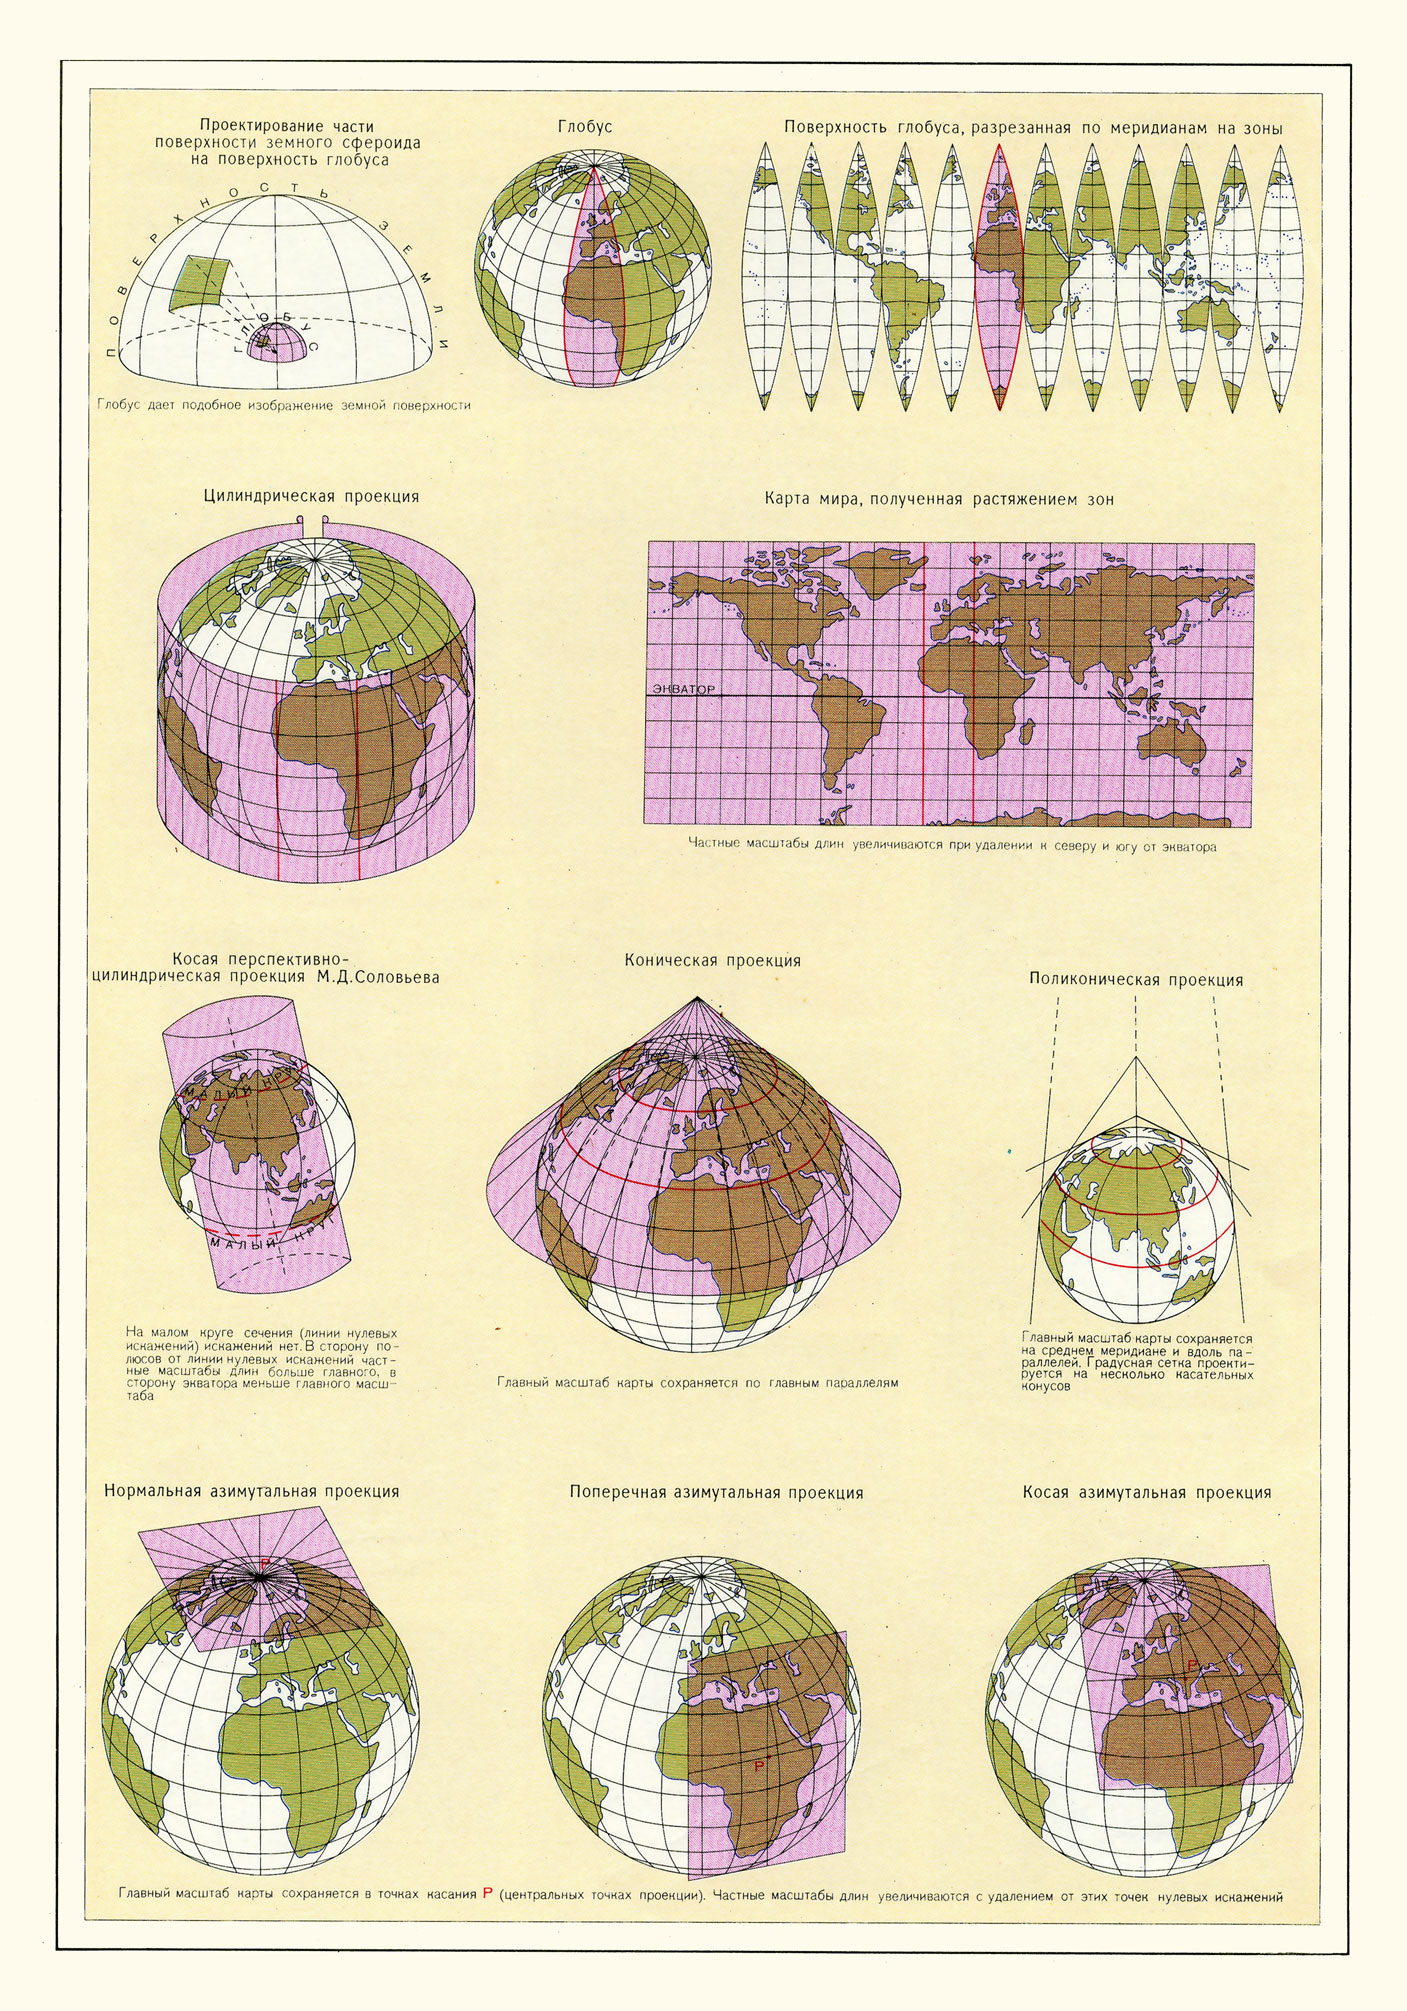 Изображение шаровой поверзности на плоскости (картографические проекции)